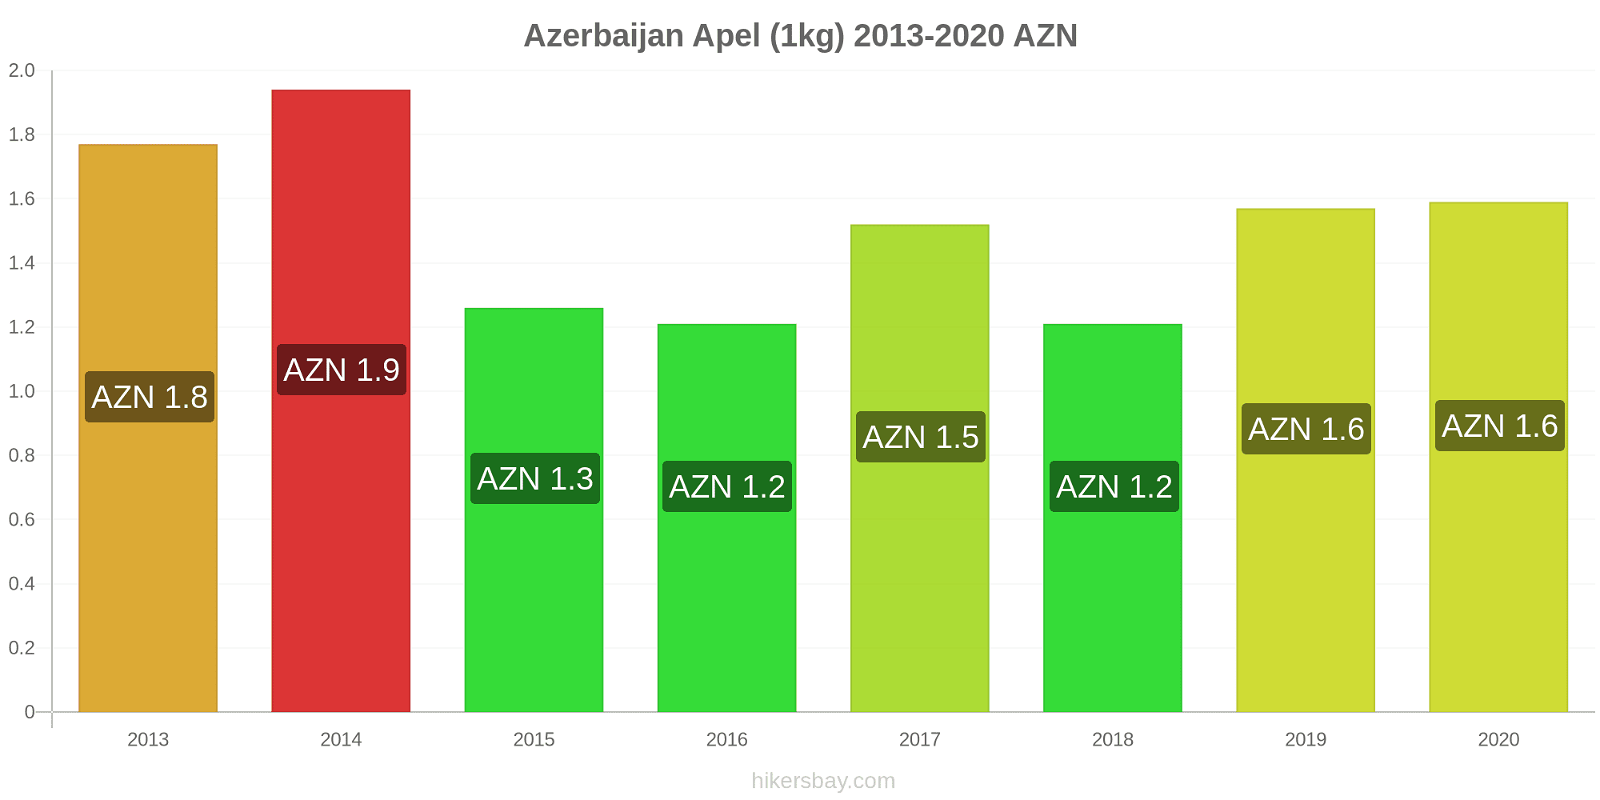 Azerbaijan perubahan harga Apel (1kg) hikersbay.com